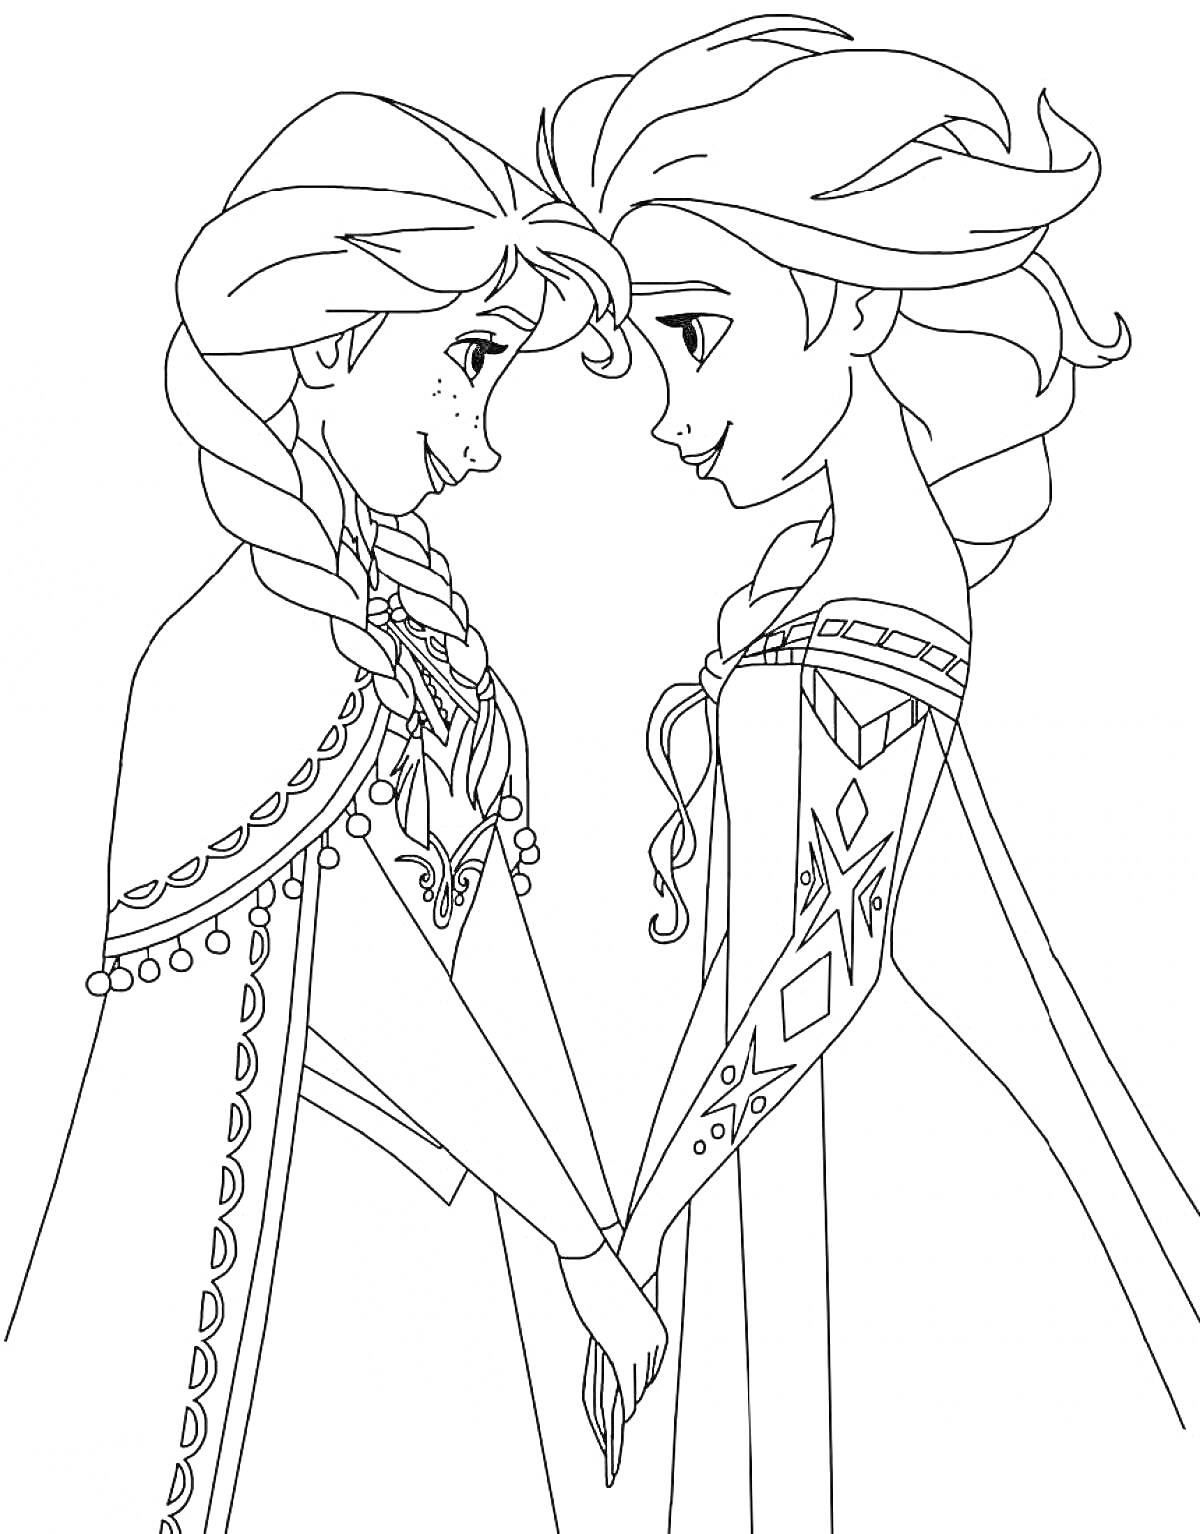 Раскраска Эльза и девушка в плаще с косами держатся за руки, стоят лицом друг к другу, на Эльзе платье с узорами